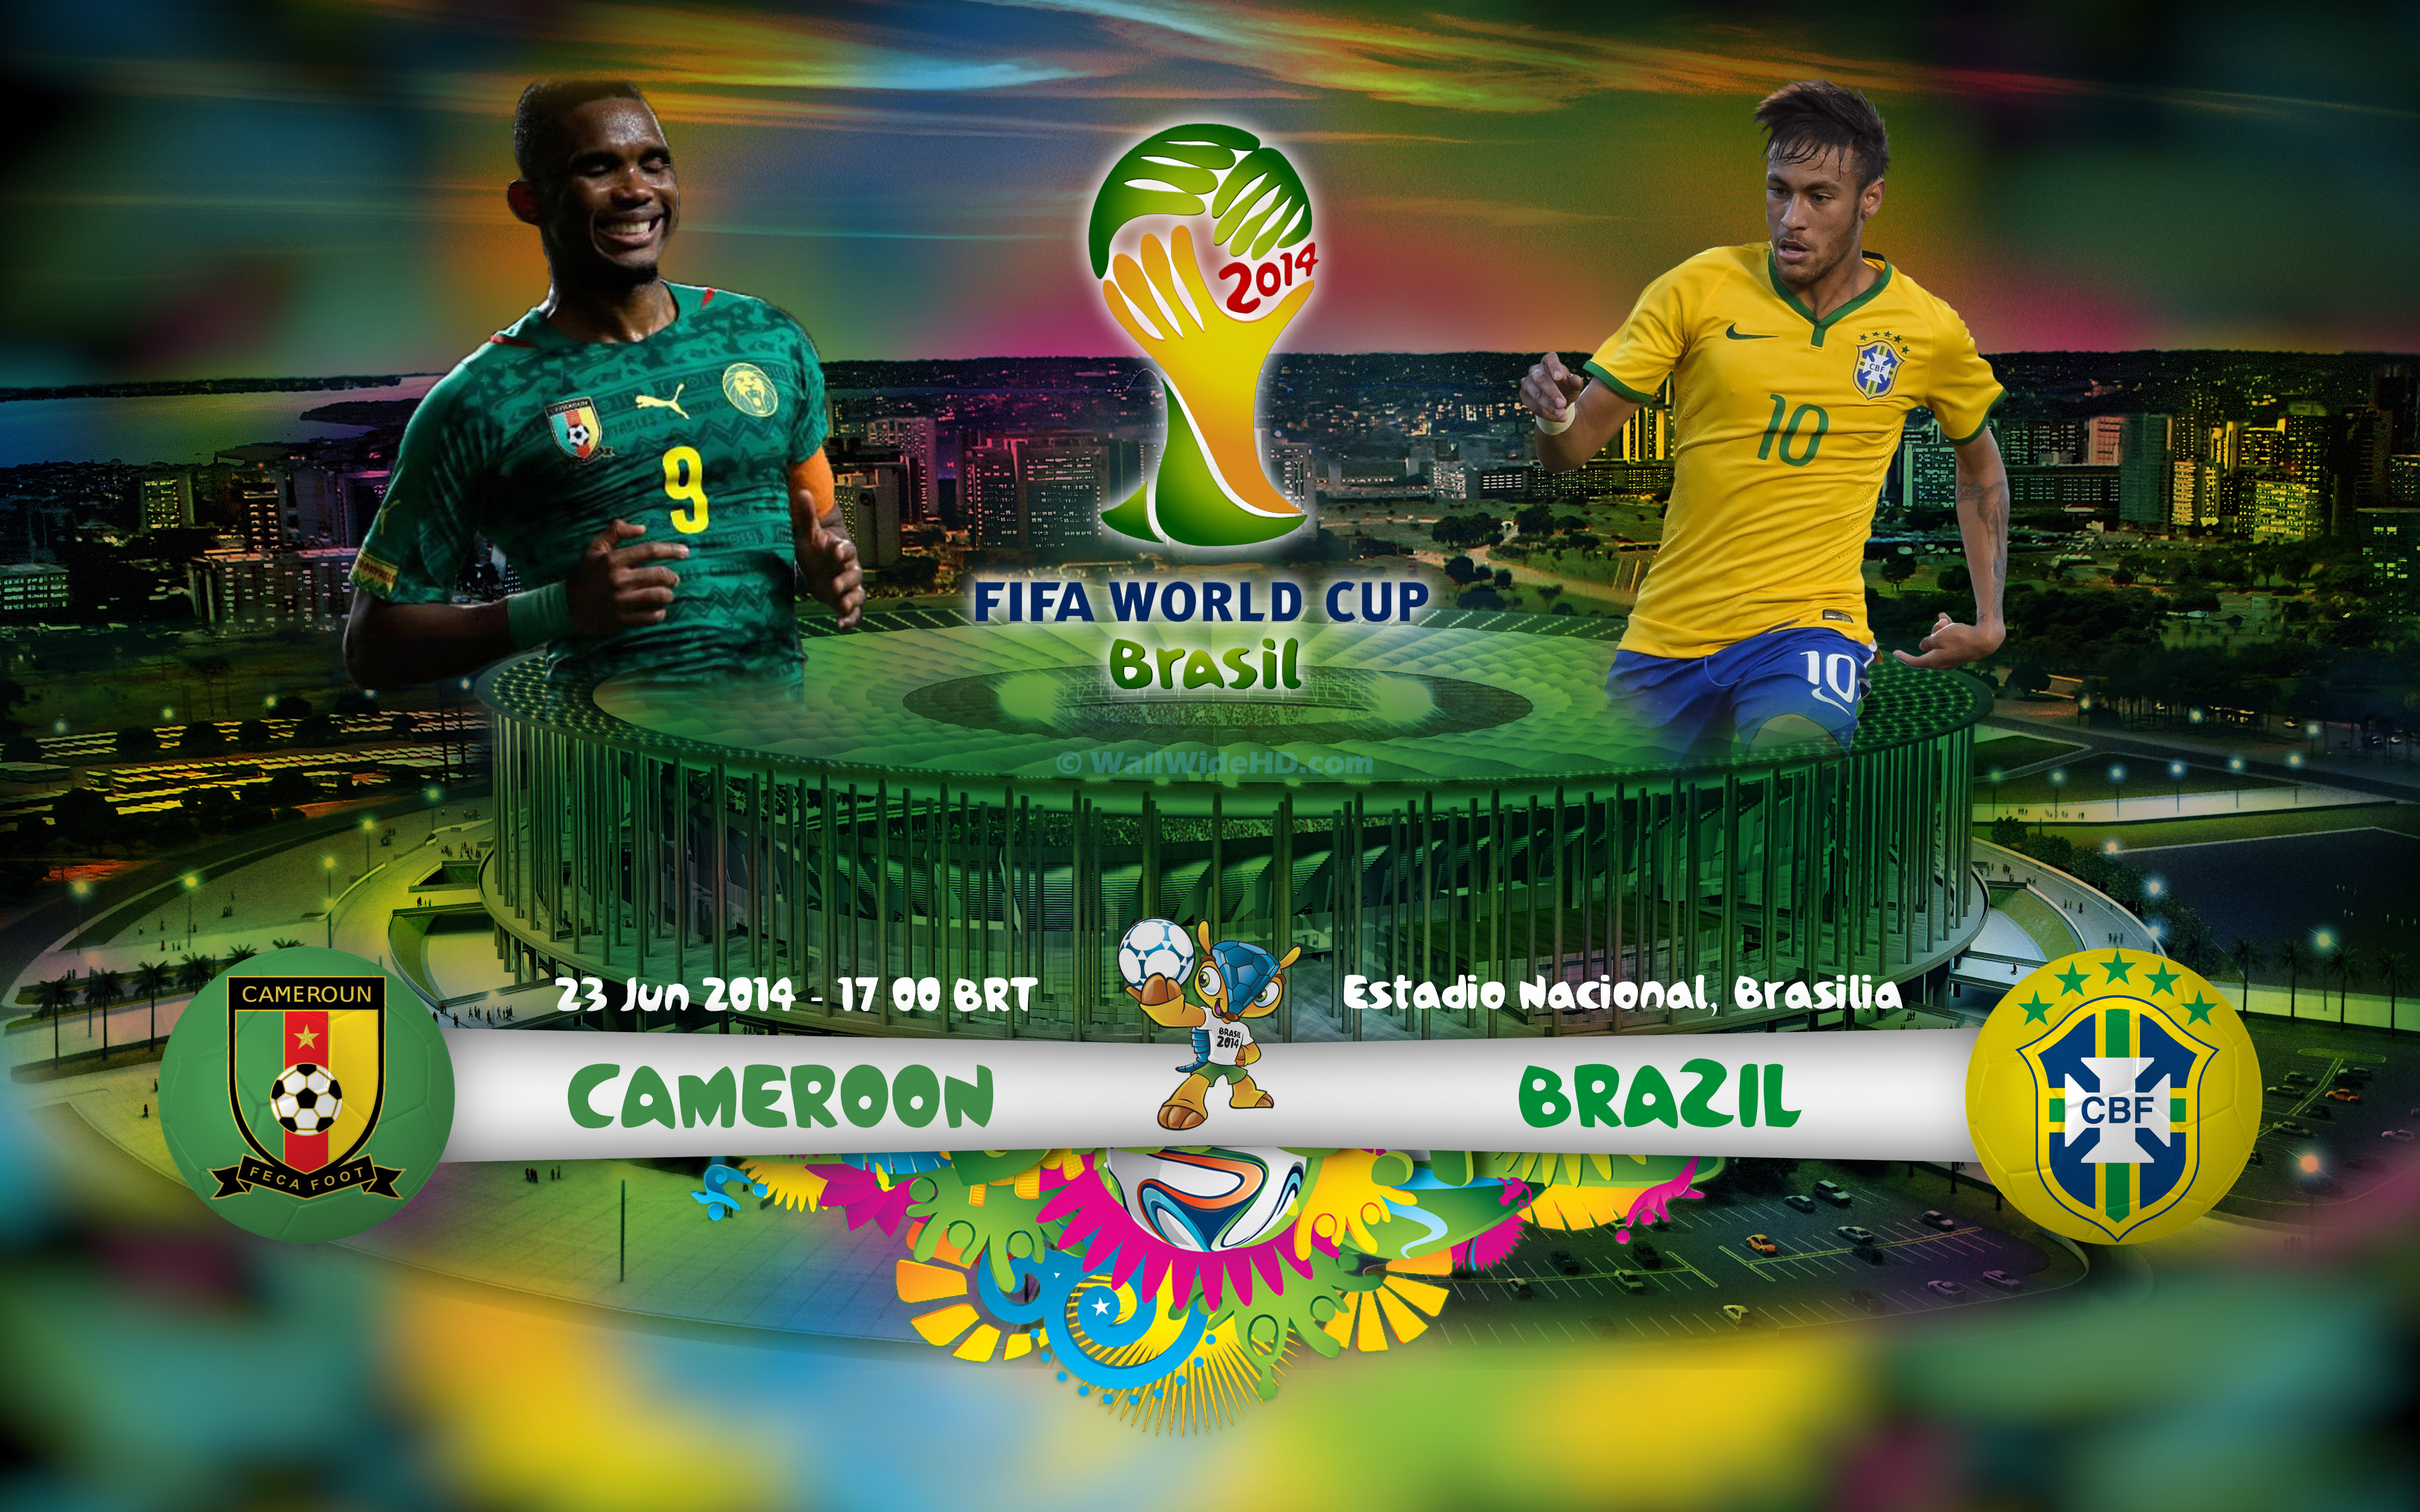 Cameroon-vs-Brazil-2014-World-Cup-Group-A-Football-Match-Wallpaper